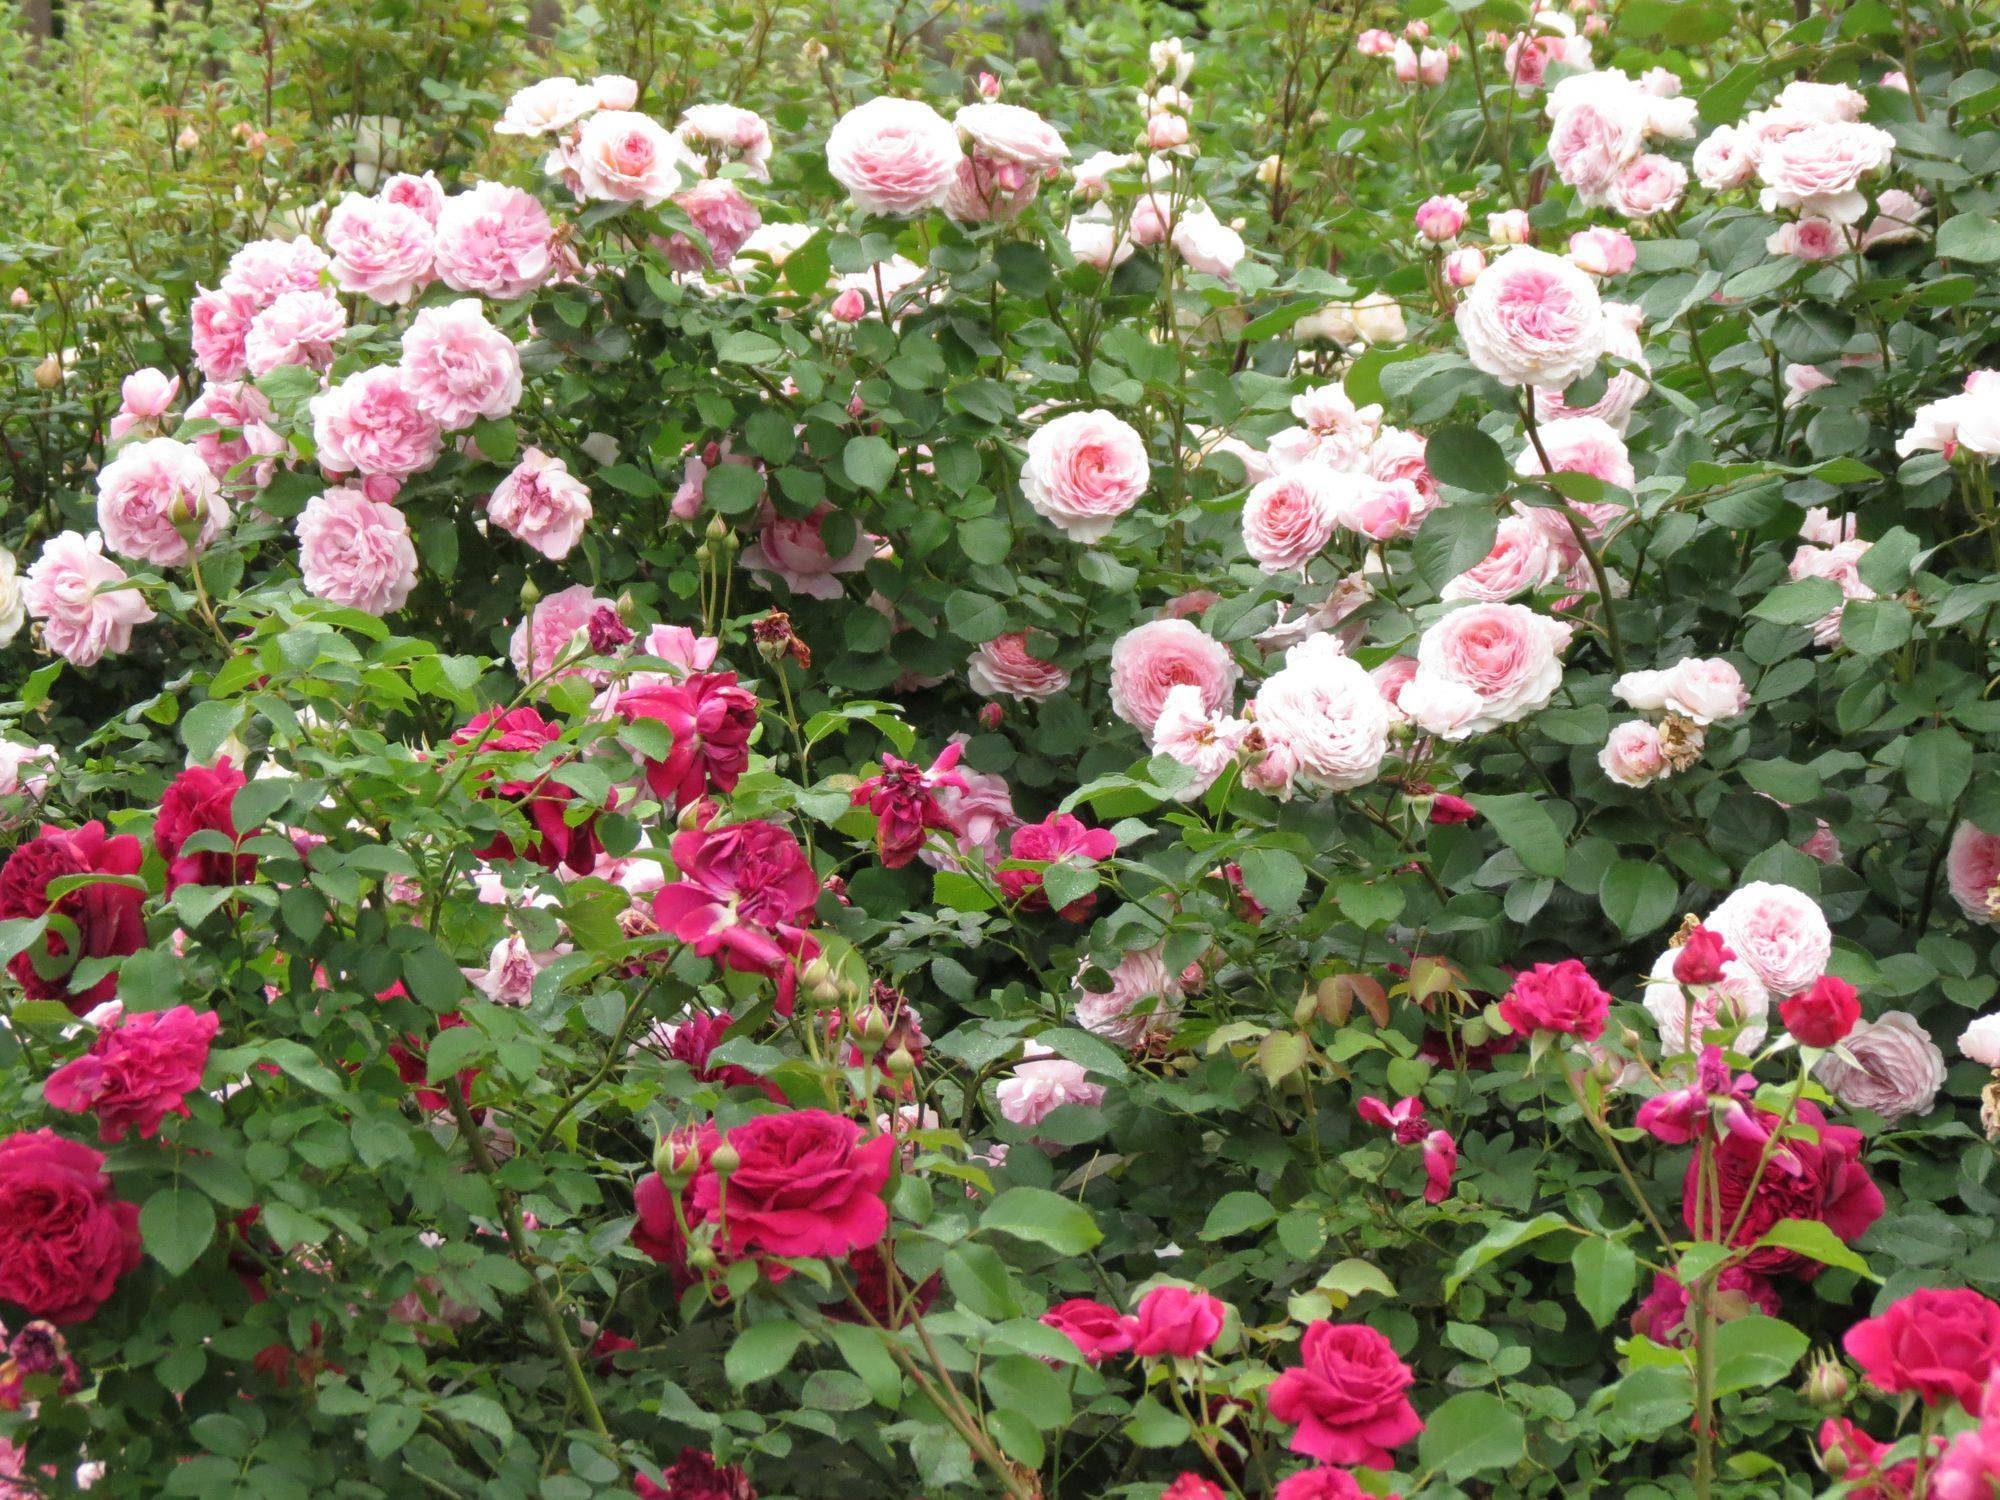 Английские розы: описание и фото лучших представителей групп сортов дэвида остина